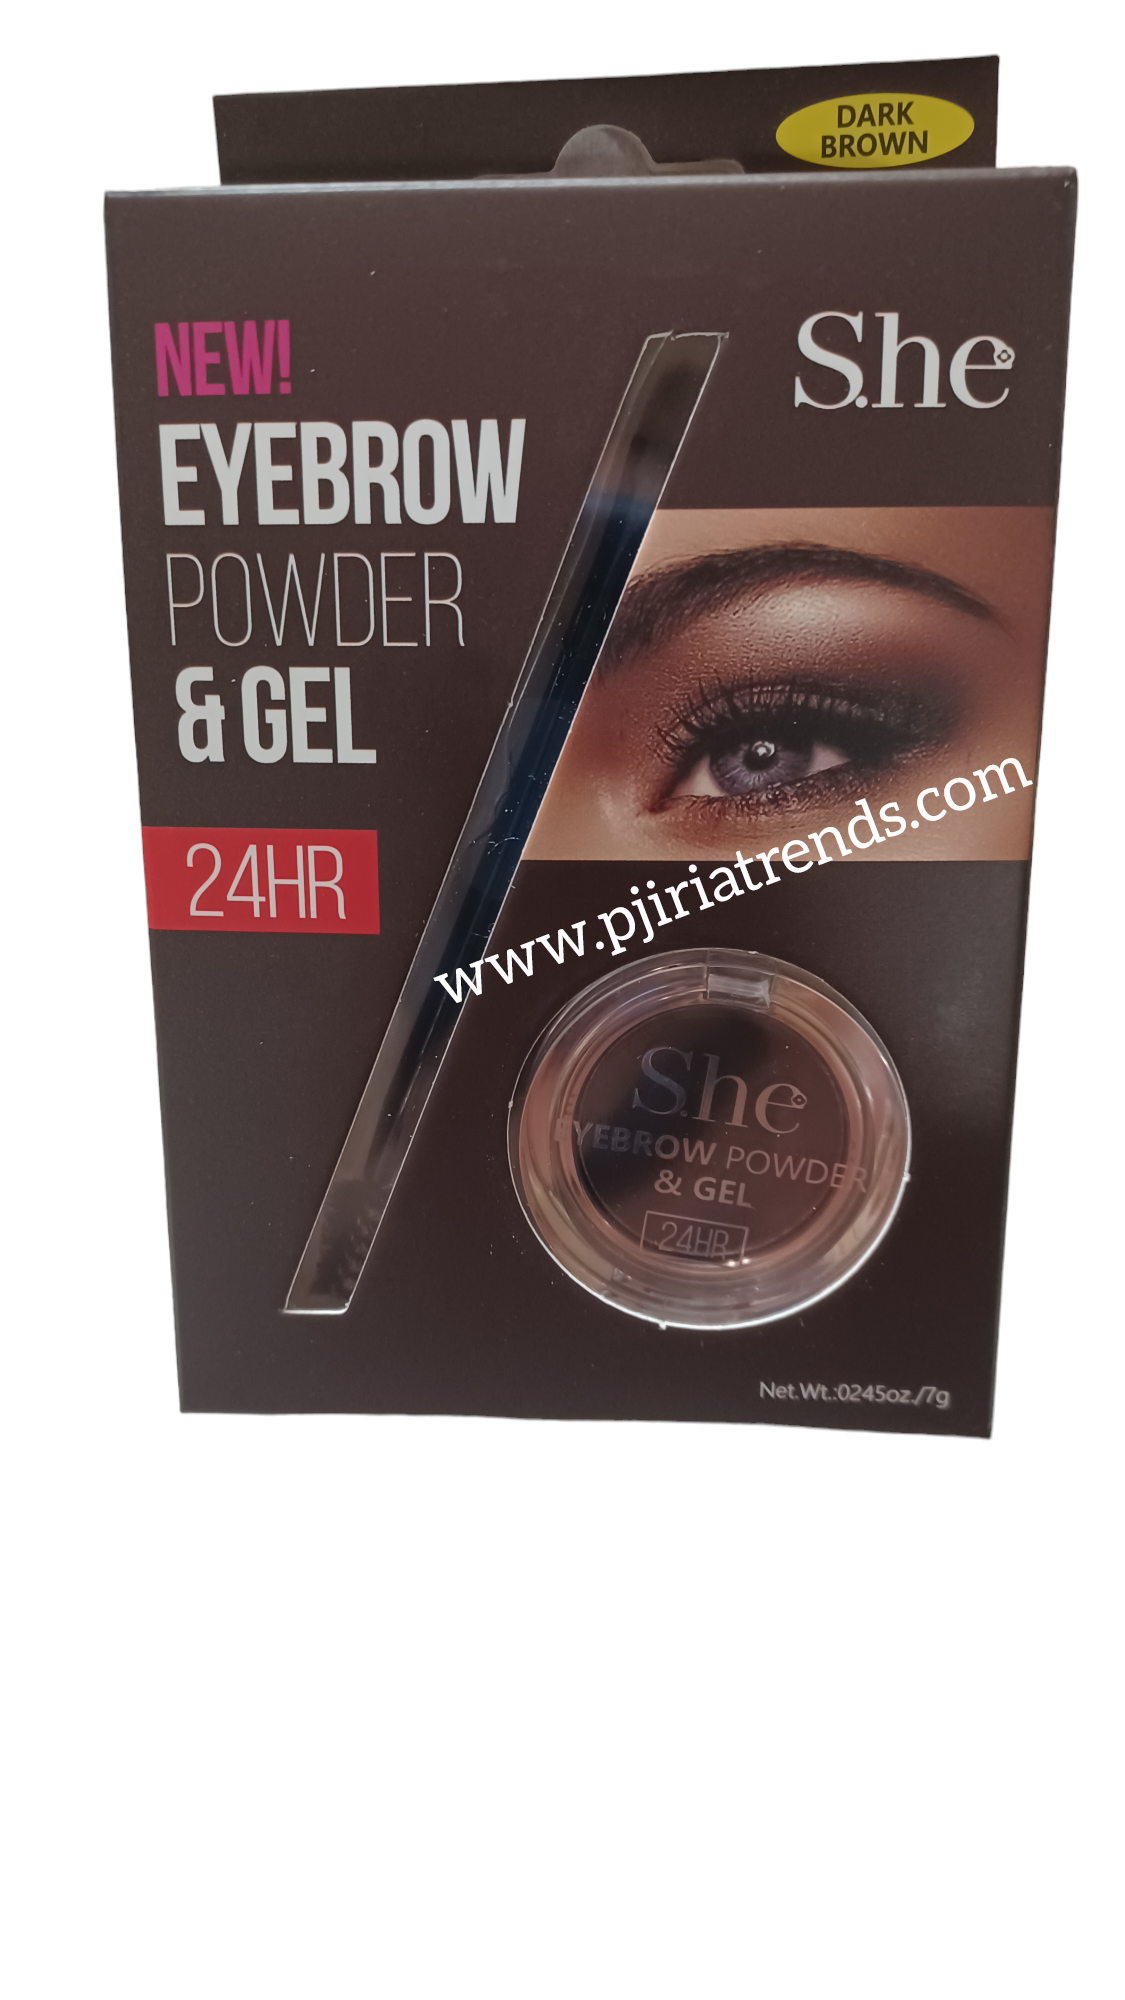 S.he Eyebrow Powder & Gel 24HR